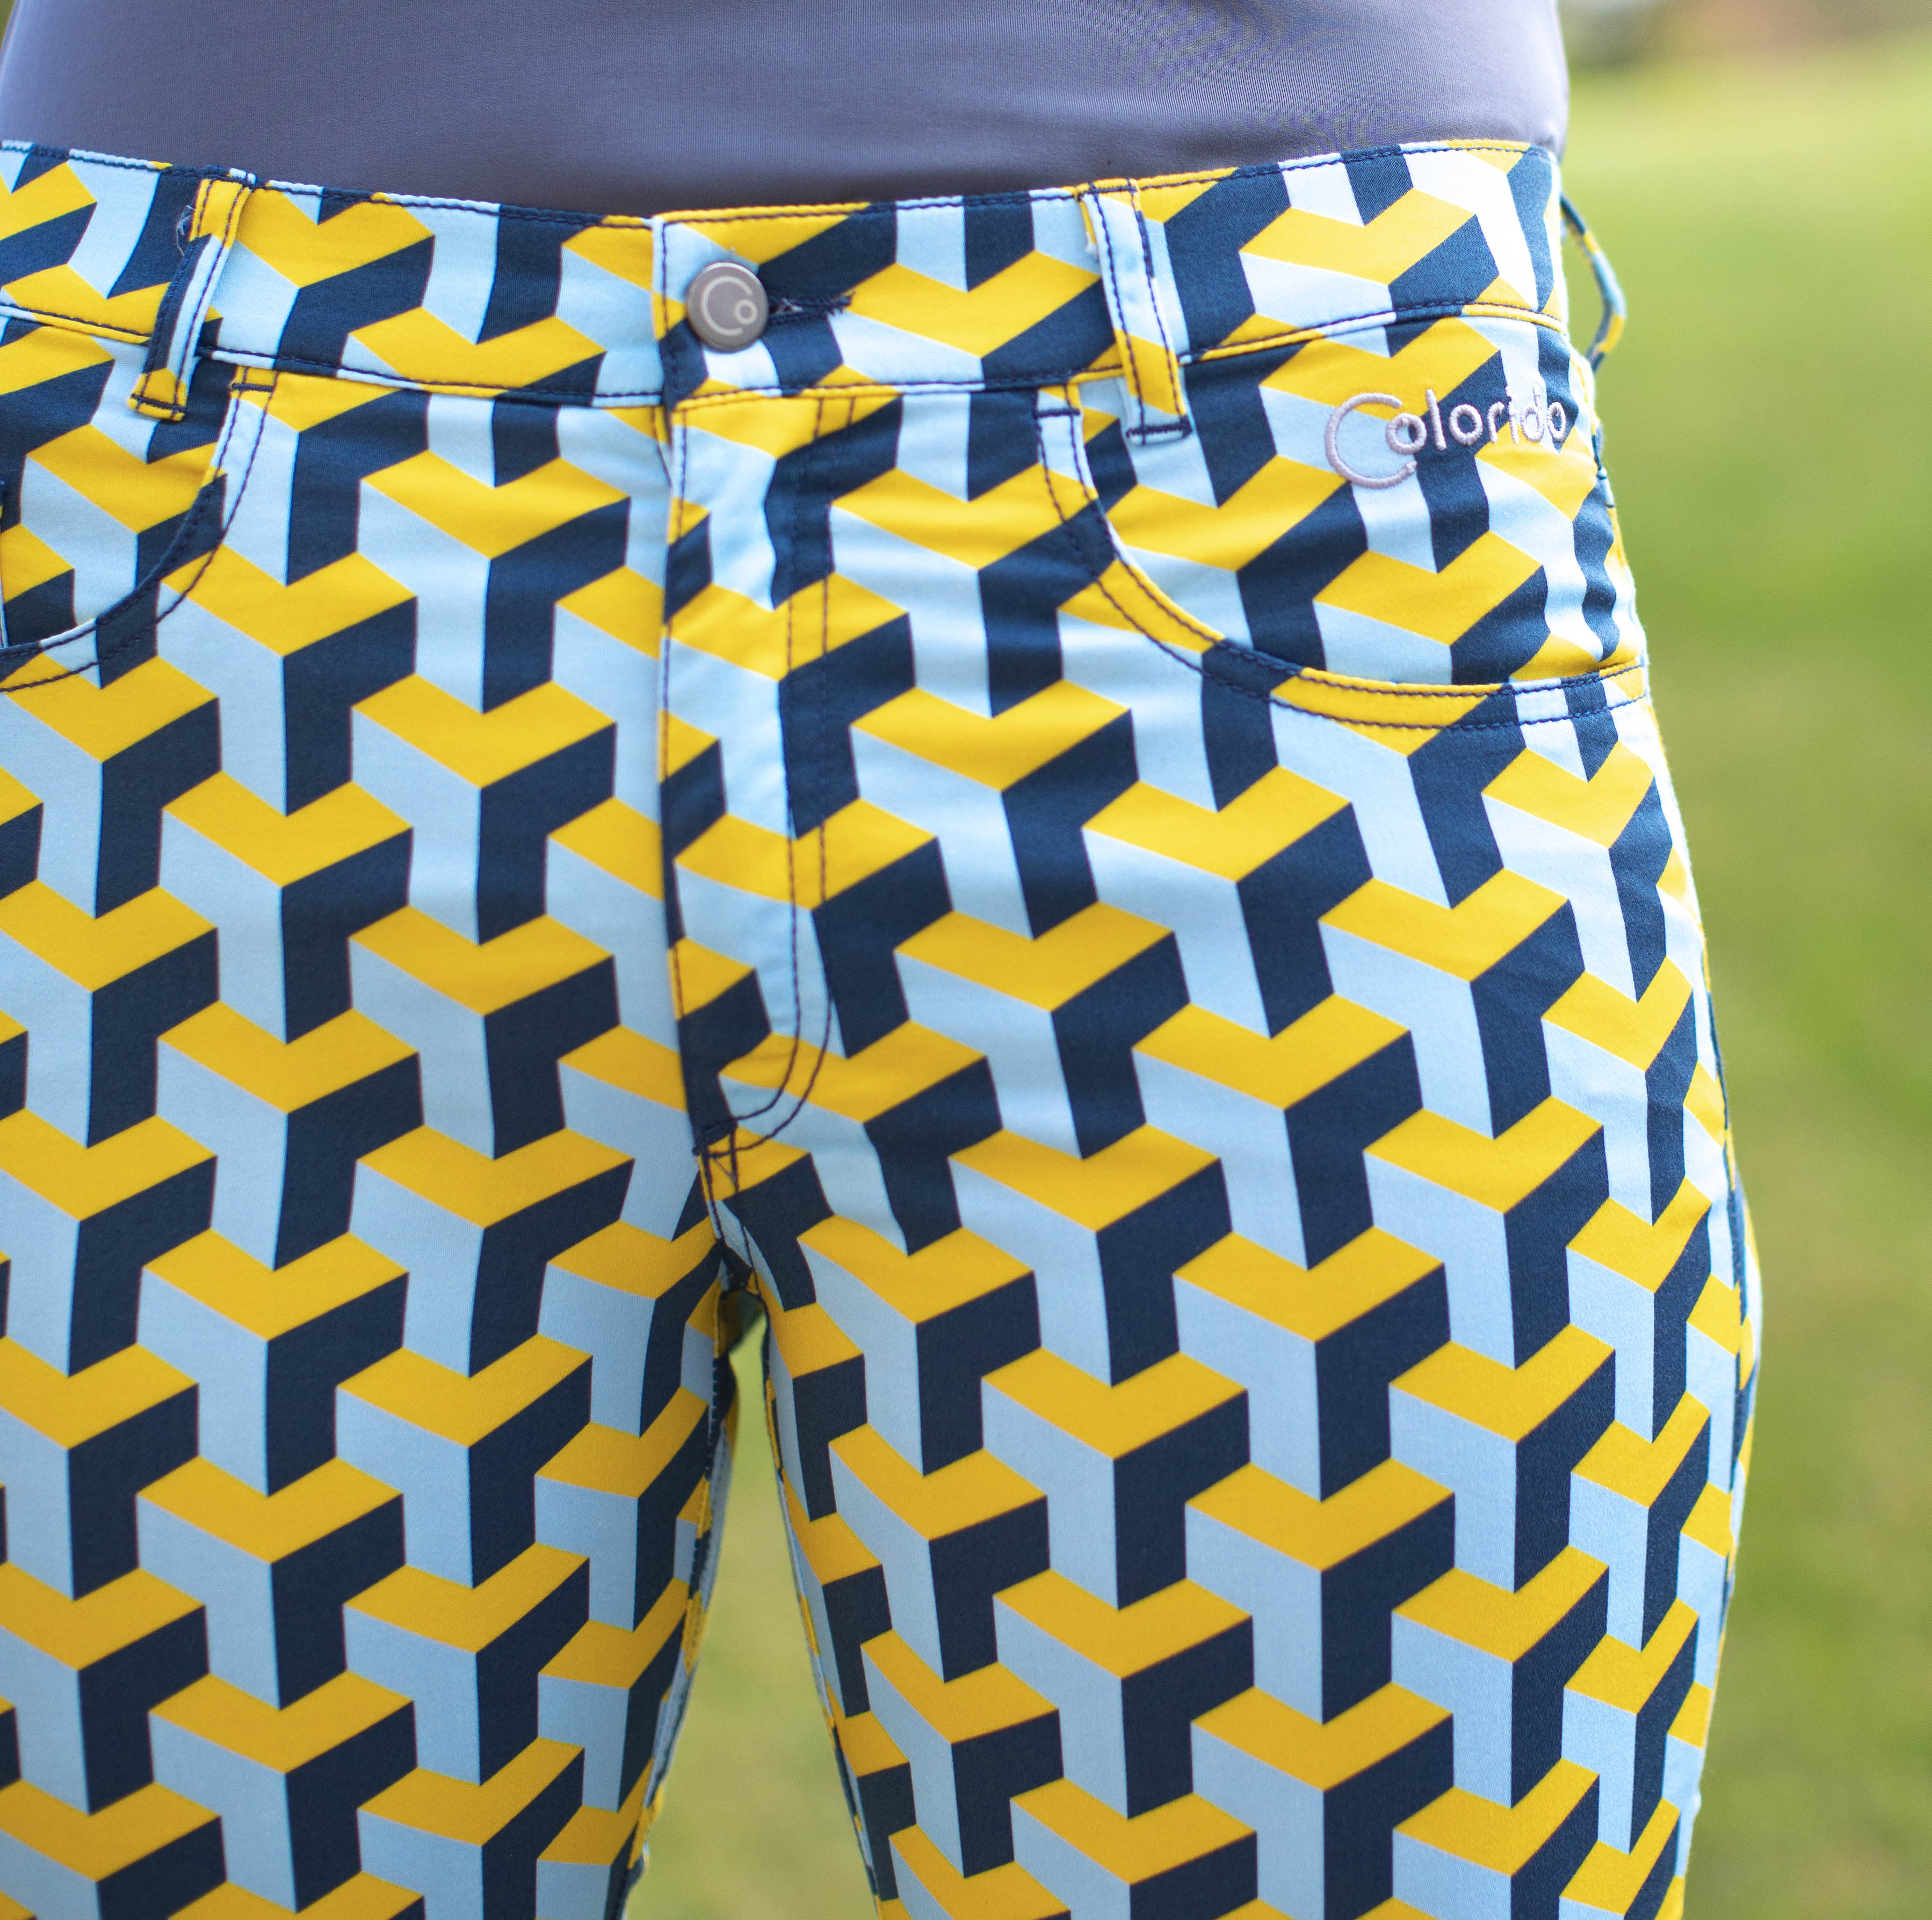 Dámské žluto-modré golfové kalhoty Colorido Velikost: L, Délka nohavic: KLASICKÁ, Barva: ŽLUTÁ